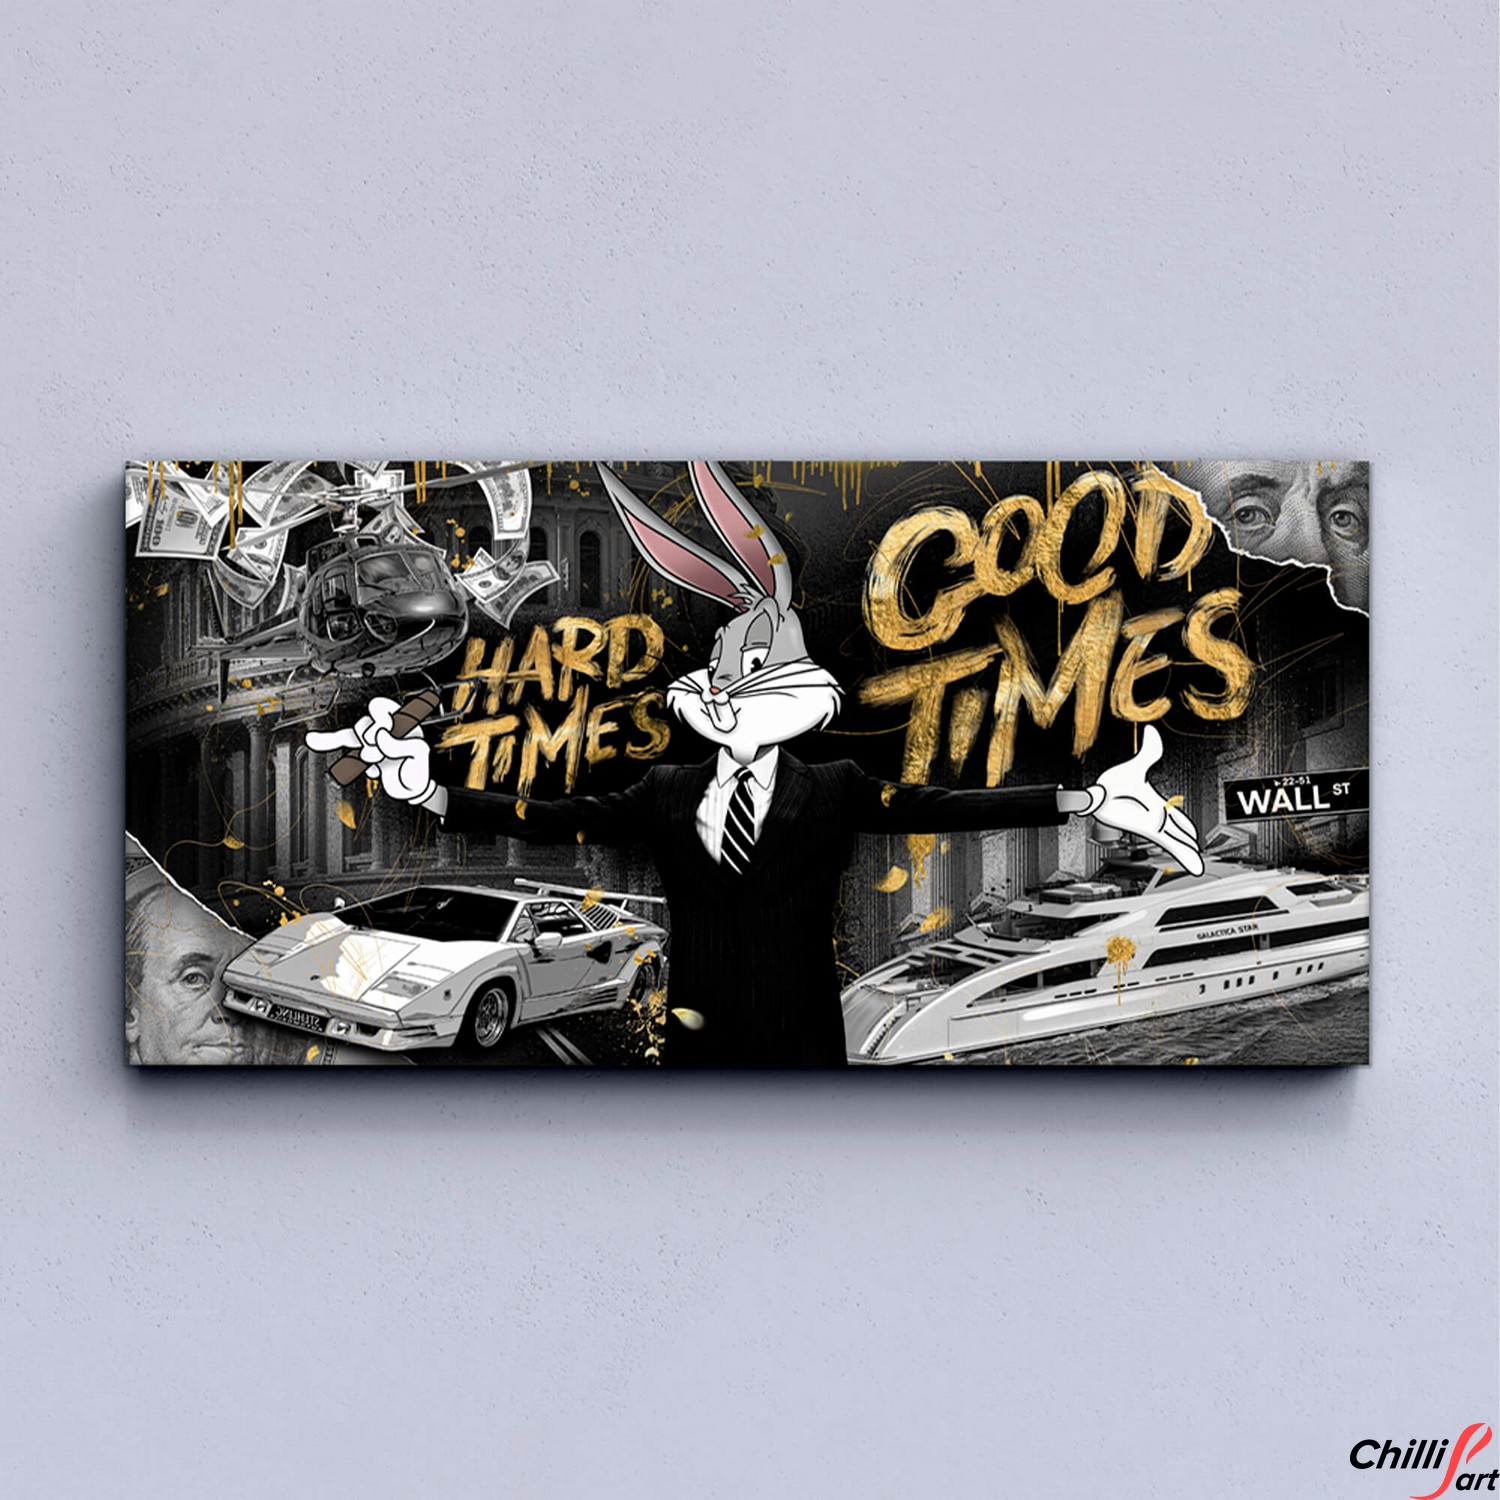 Картина Hard times - Good times